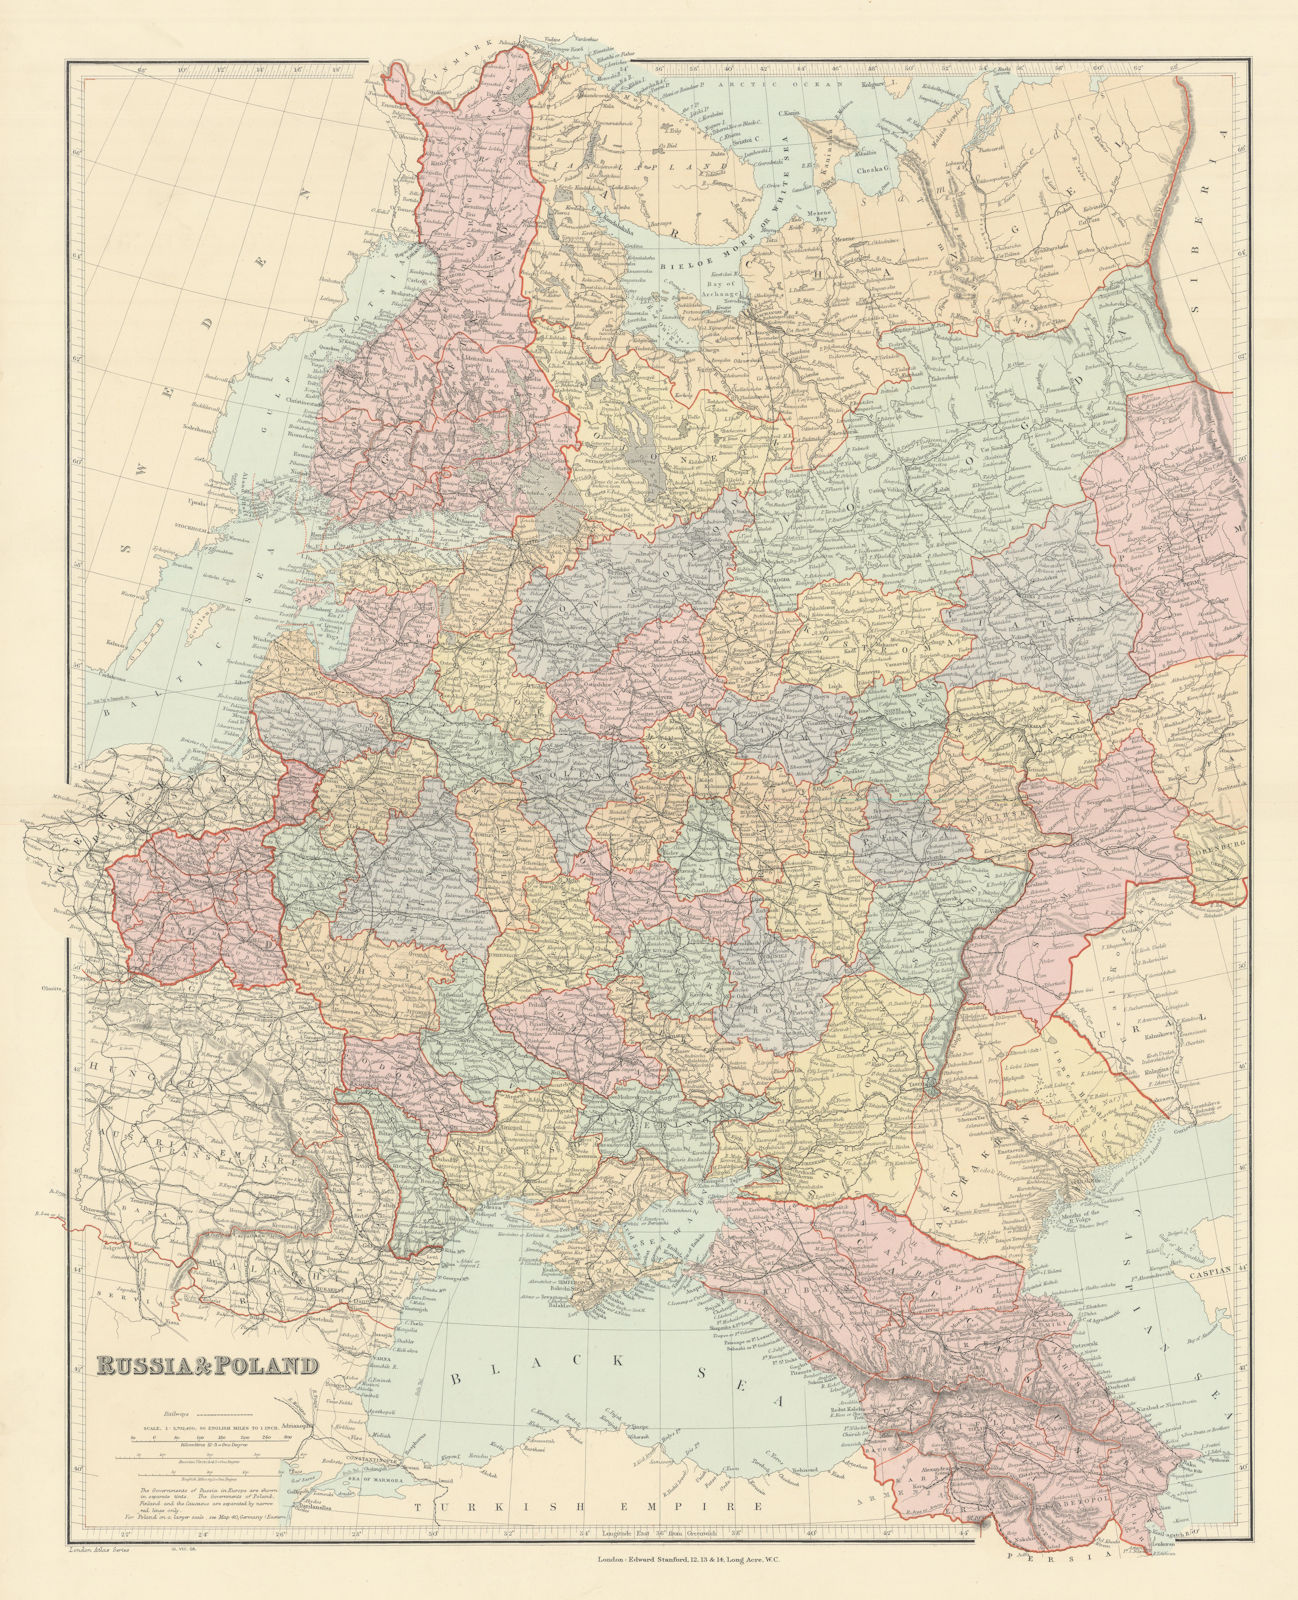 Russia & Poland. Caucasus. Republics krais oblasts railways. STANFORD 1904 map